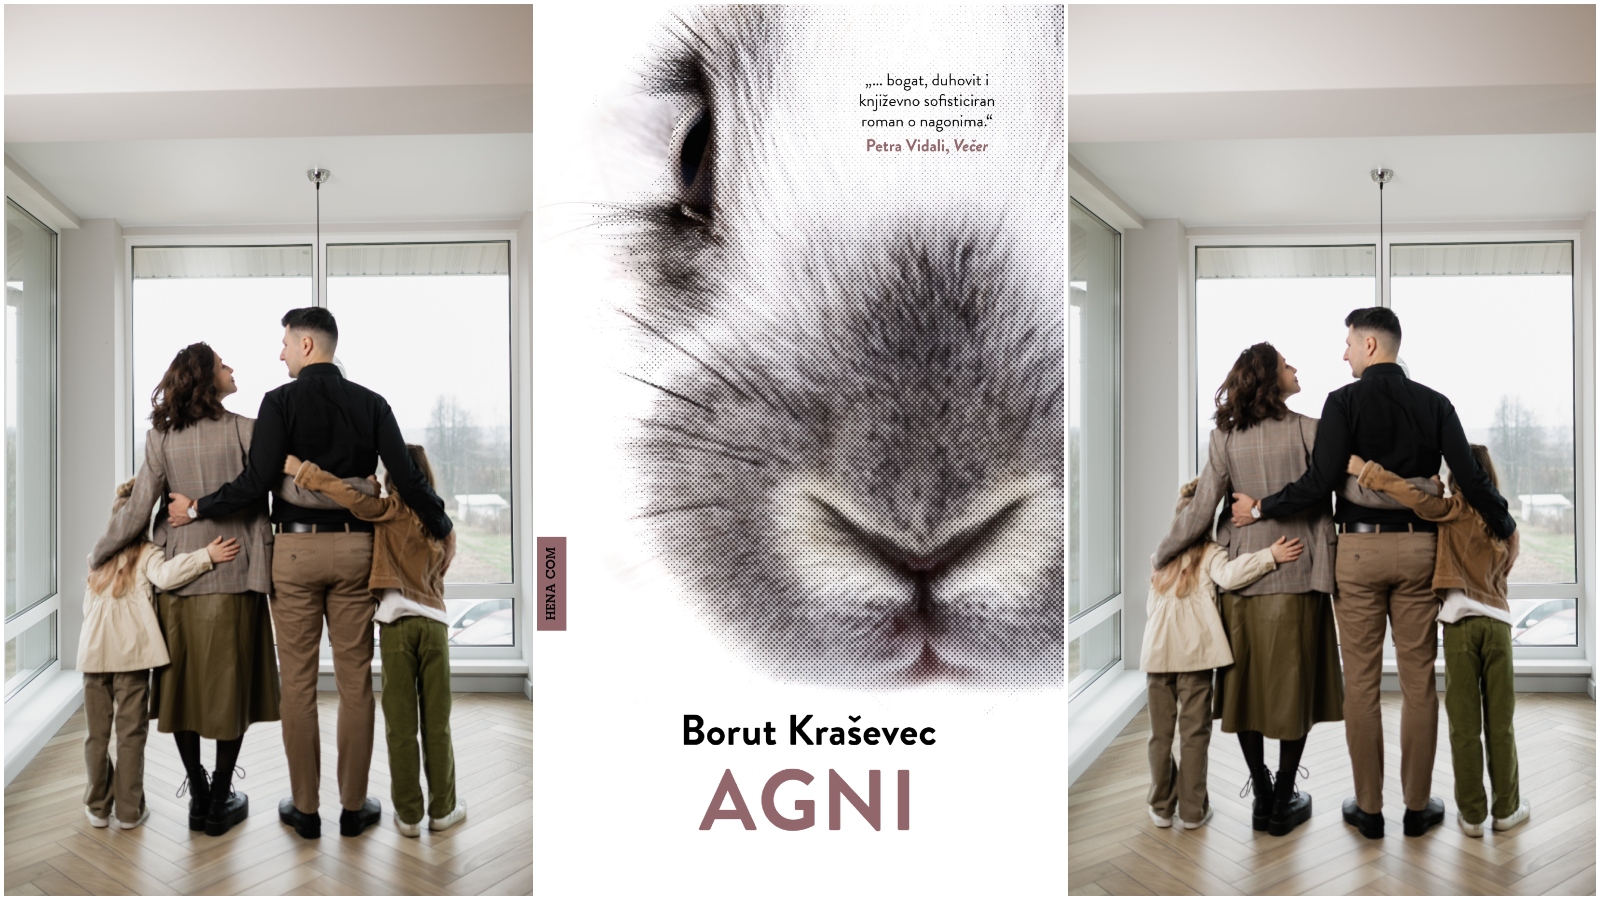 Roman Agni je eden najboljših slovenskih romanov zadnjih let